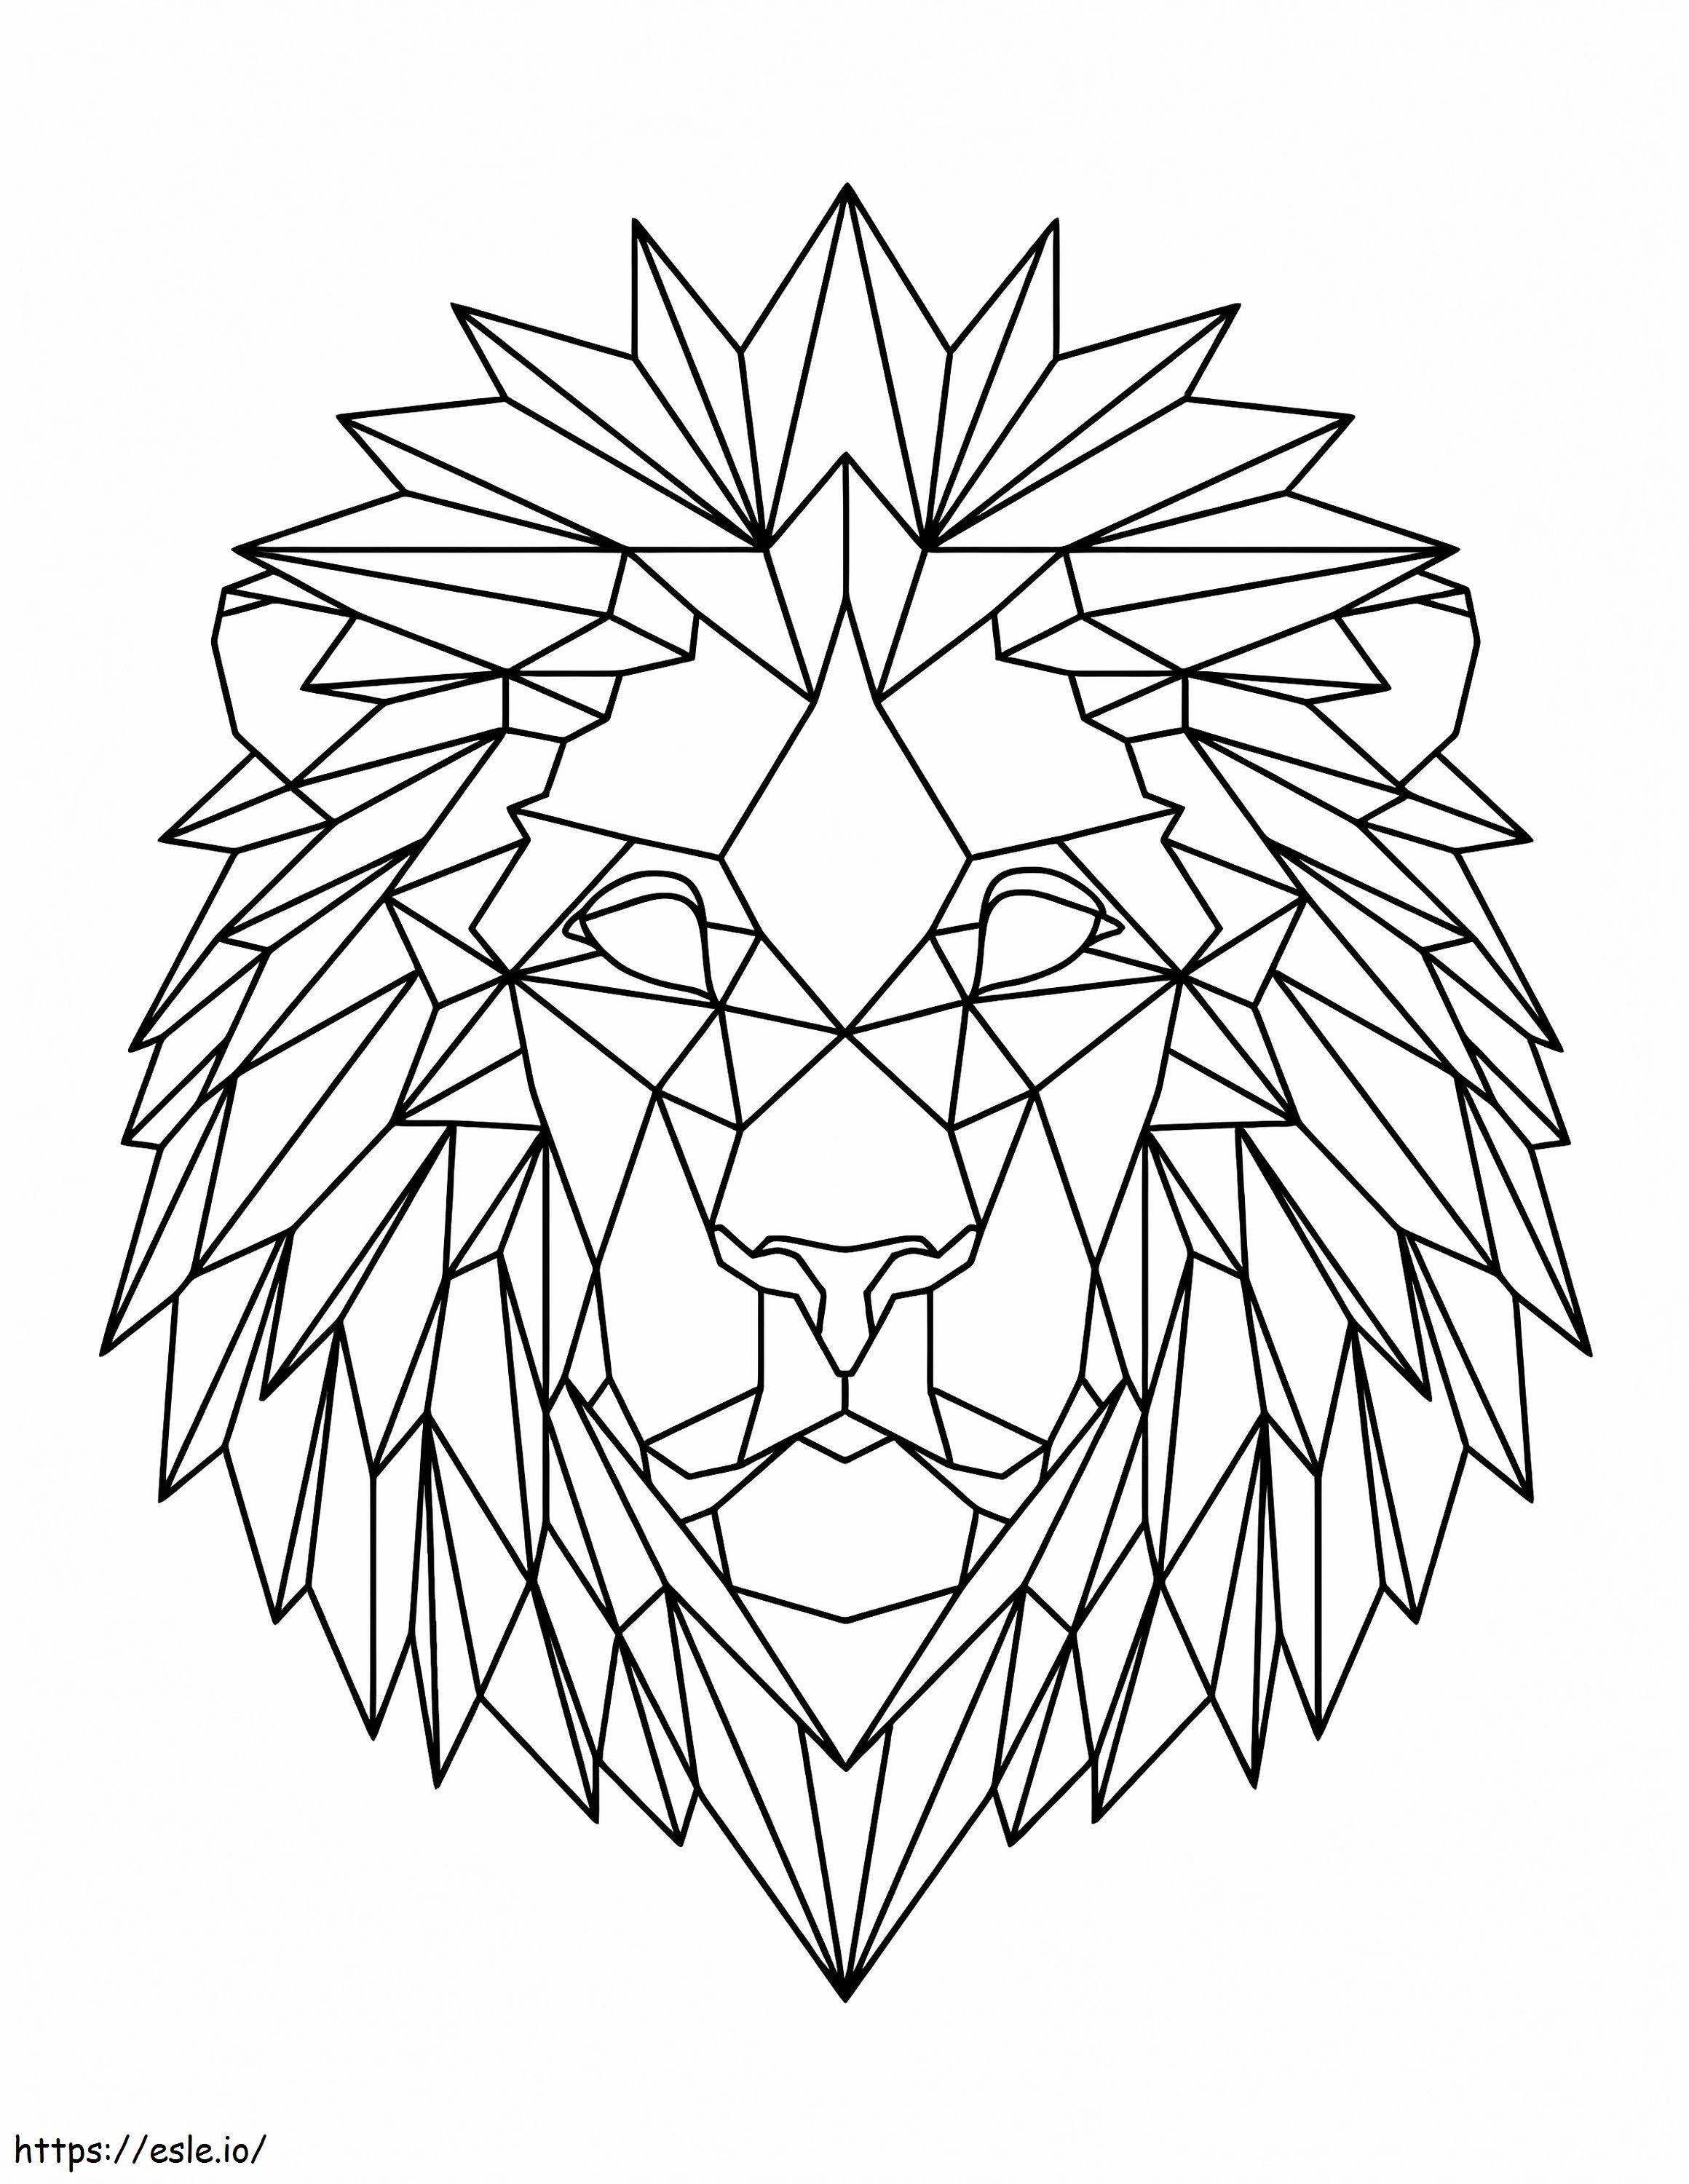 Cara Geométrica de Leão para colorir